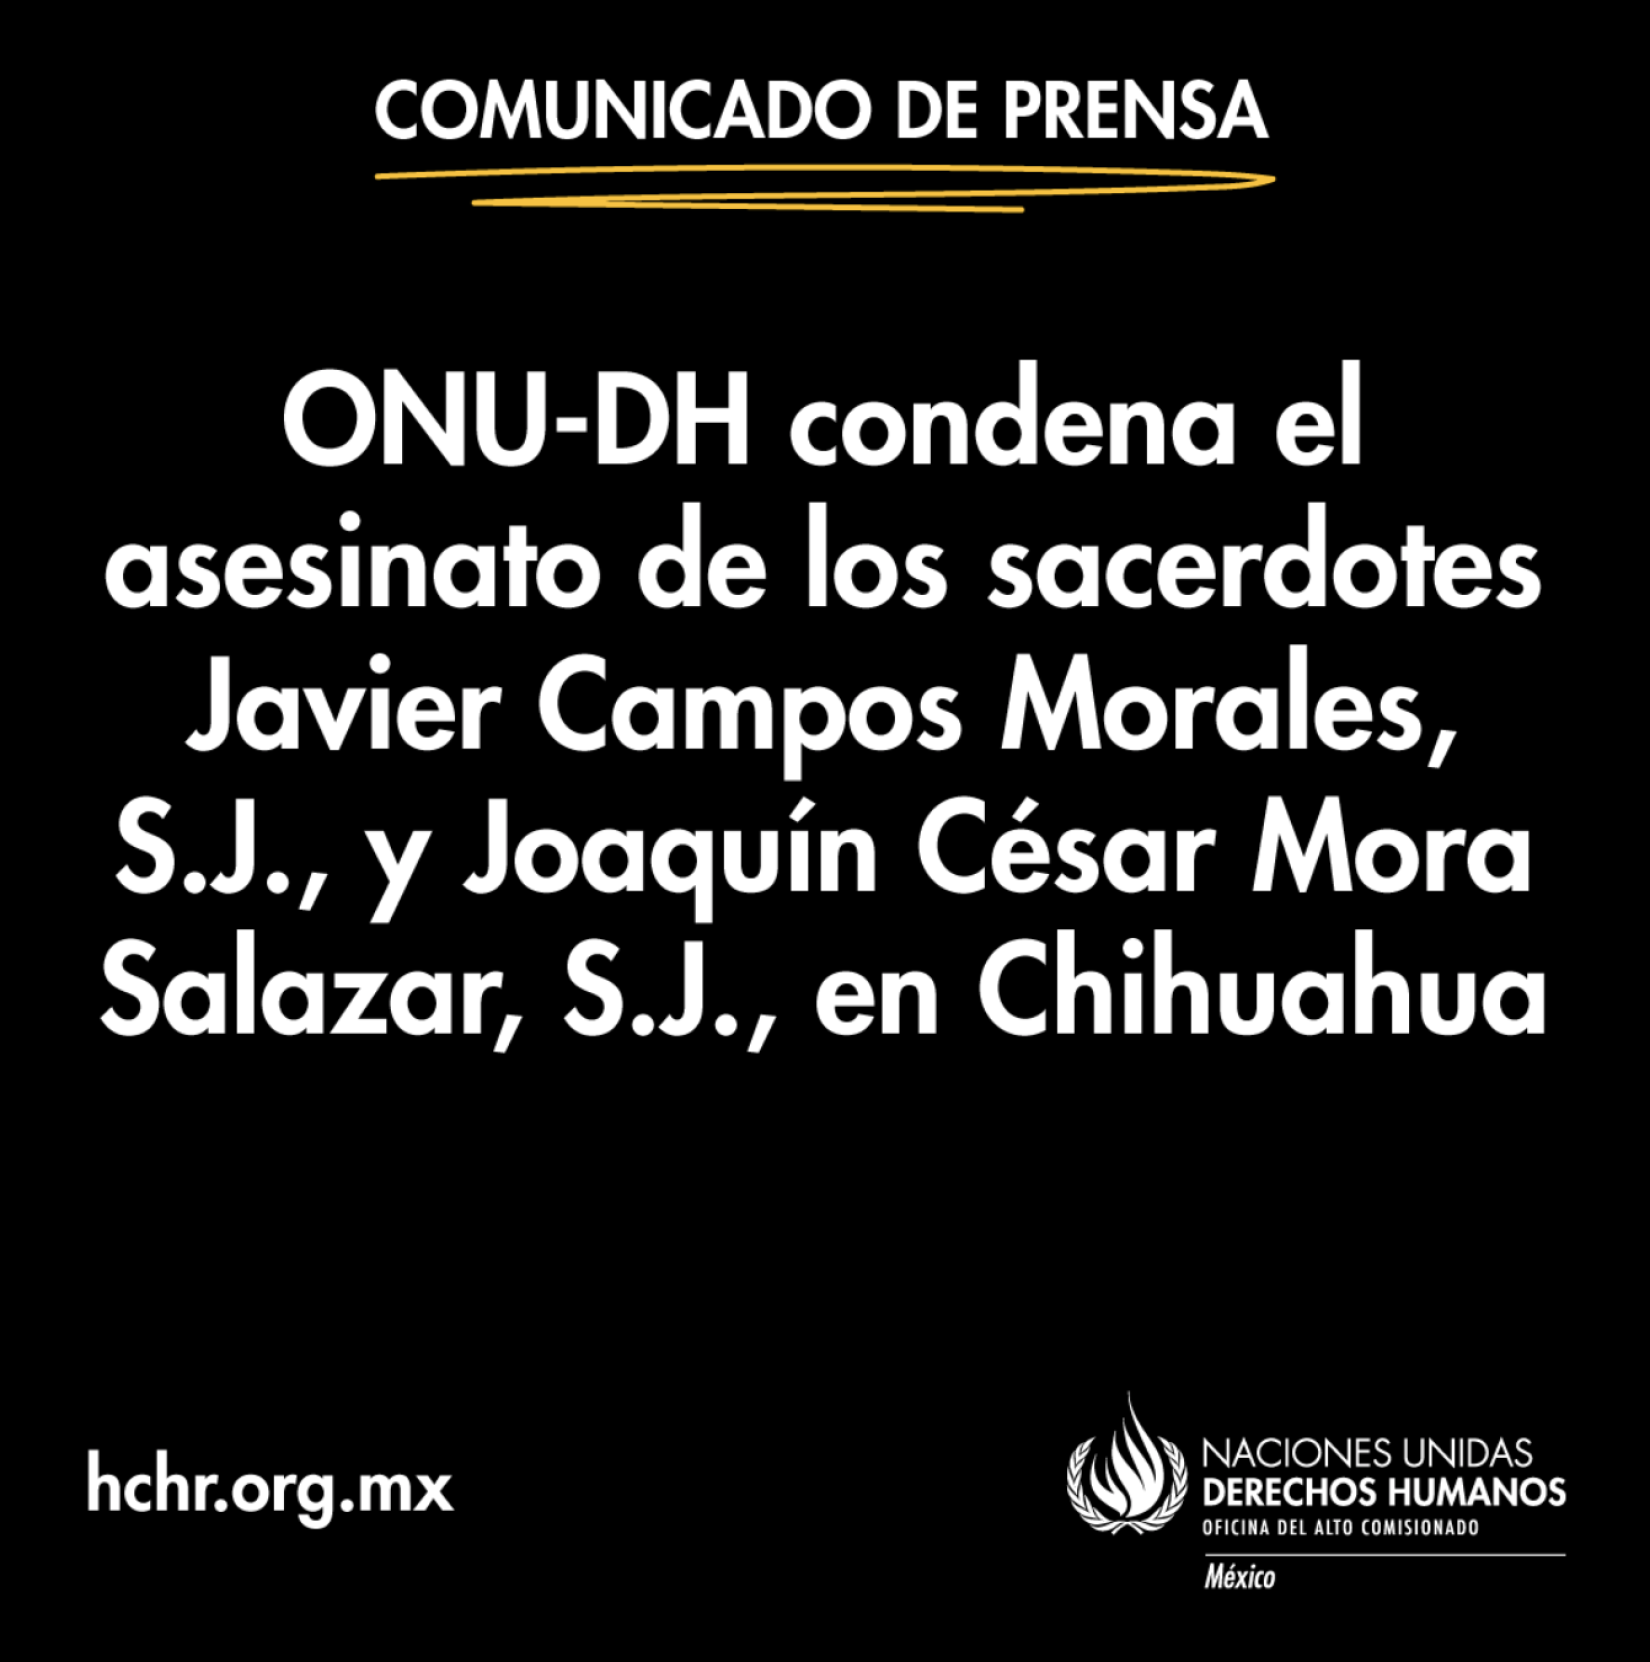 Onu Dh Condena El Asesinato De Los Sacerdotes Javier Campos Morales Sj Y Joaquín César Mora 